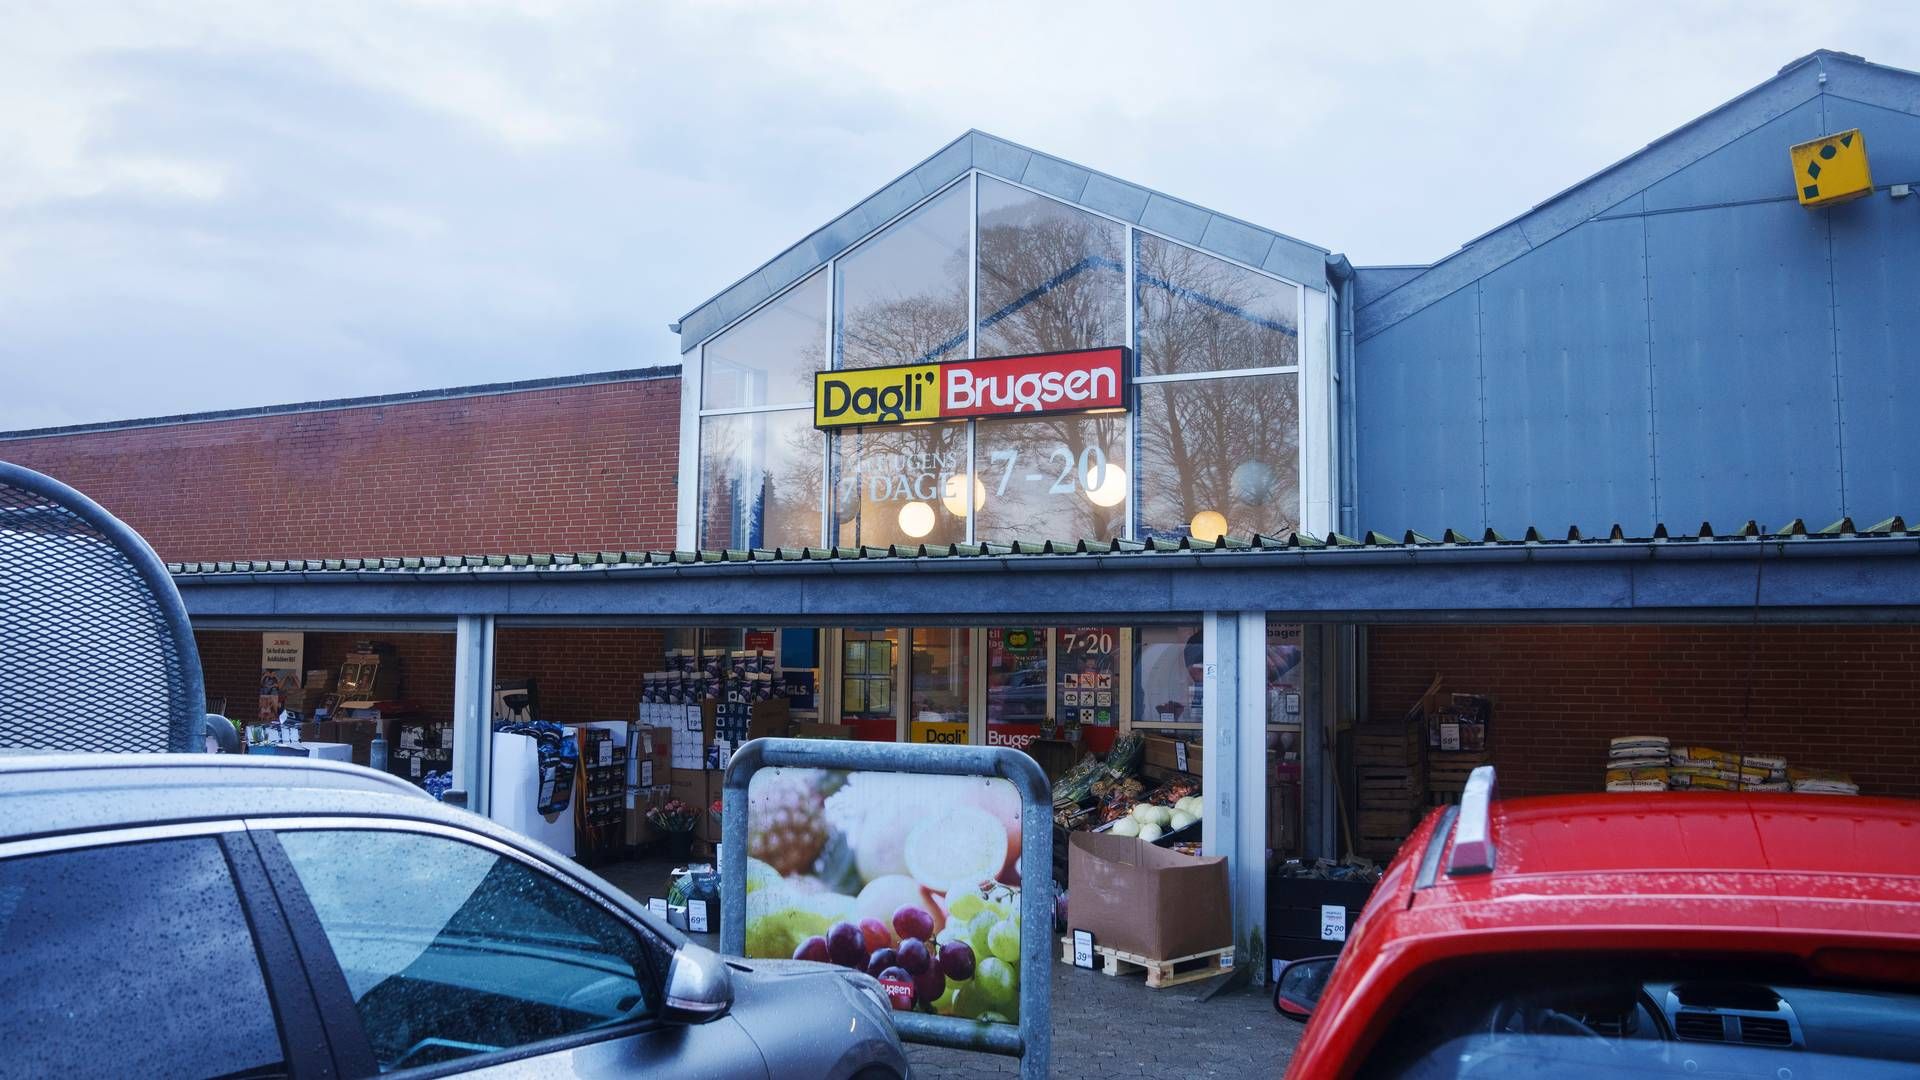 Som et led i Coops nye strategi – Fremtidens Coop – ændrer Dagli'brugsen navn til Brugsen. Størstedelen af de lokale Dagli'brugsen-butikker er drevet af selvstændige brugsforeninger. | Foto: Bo Amstrup